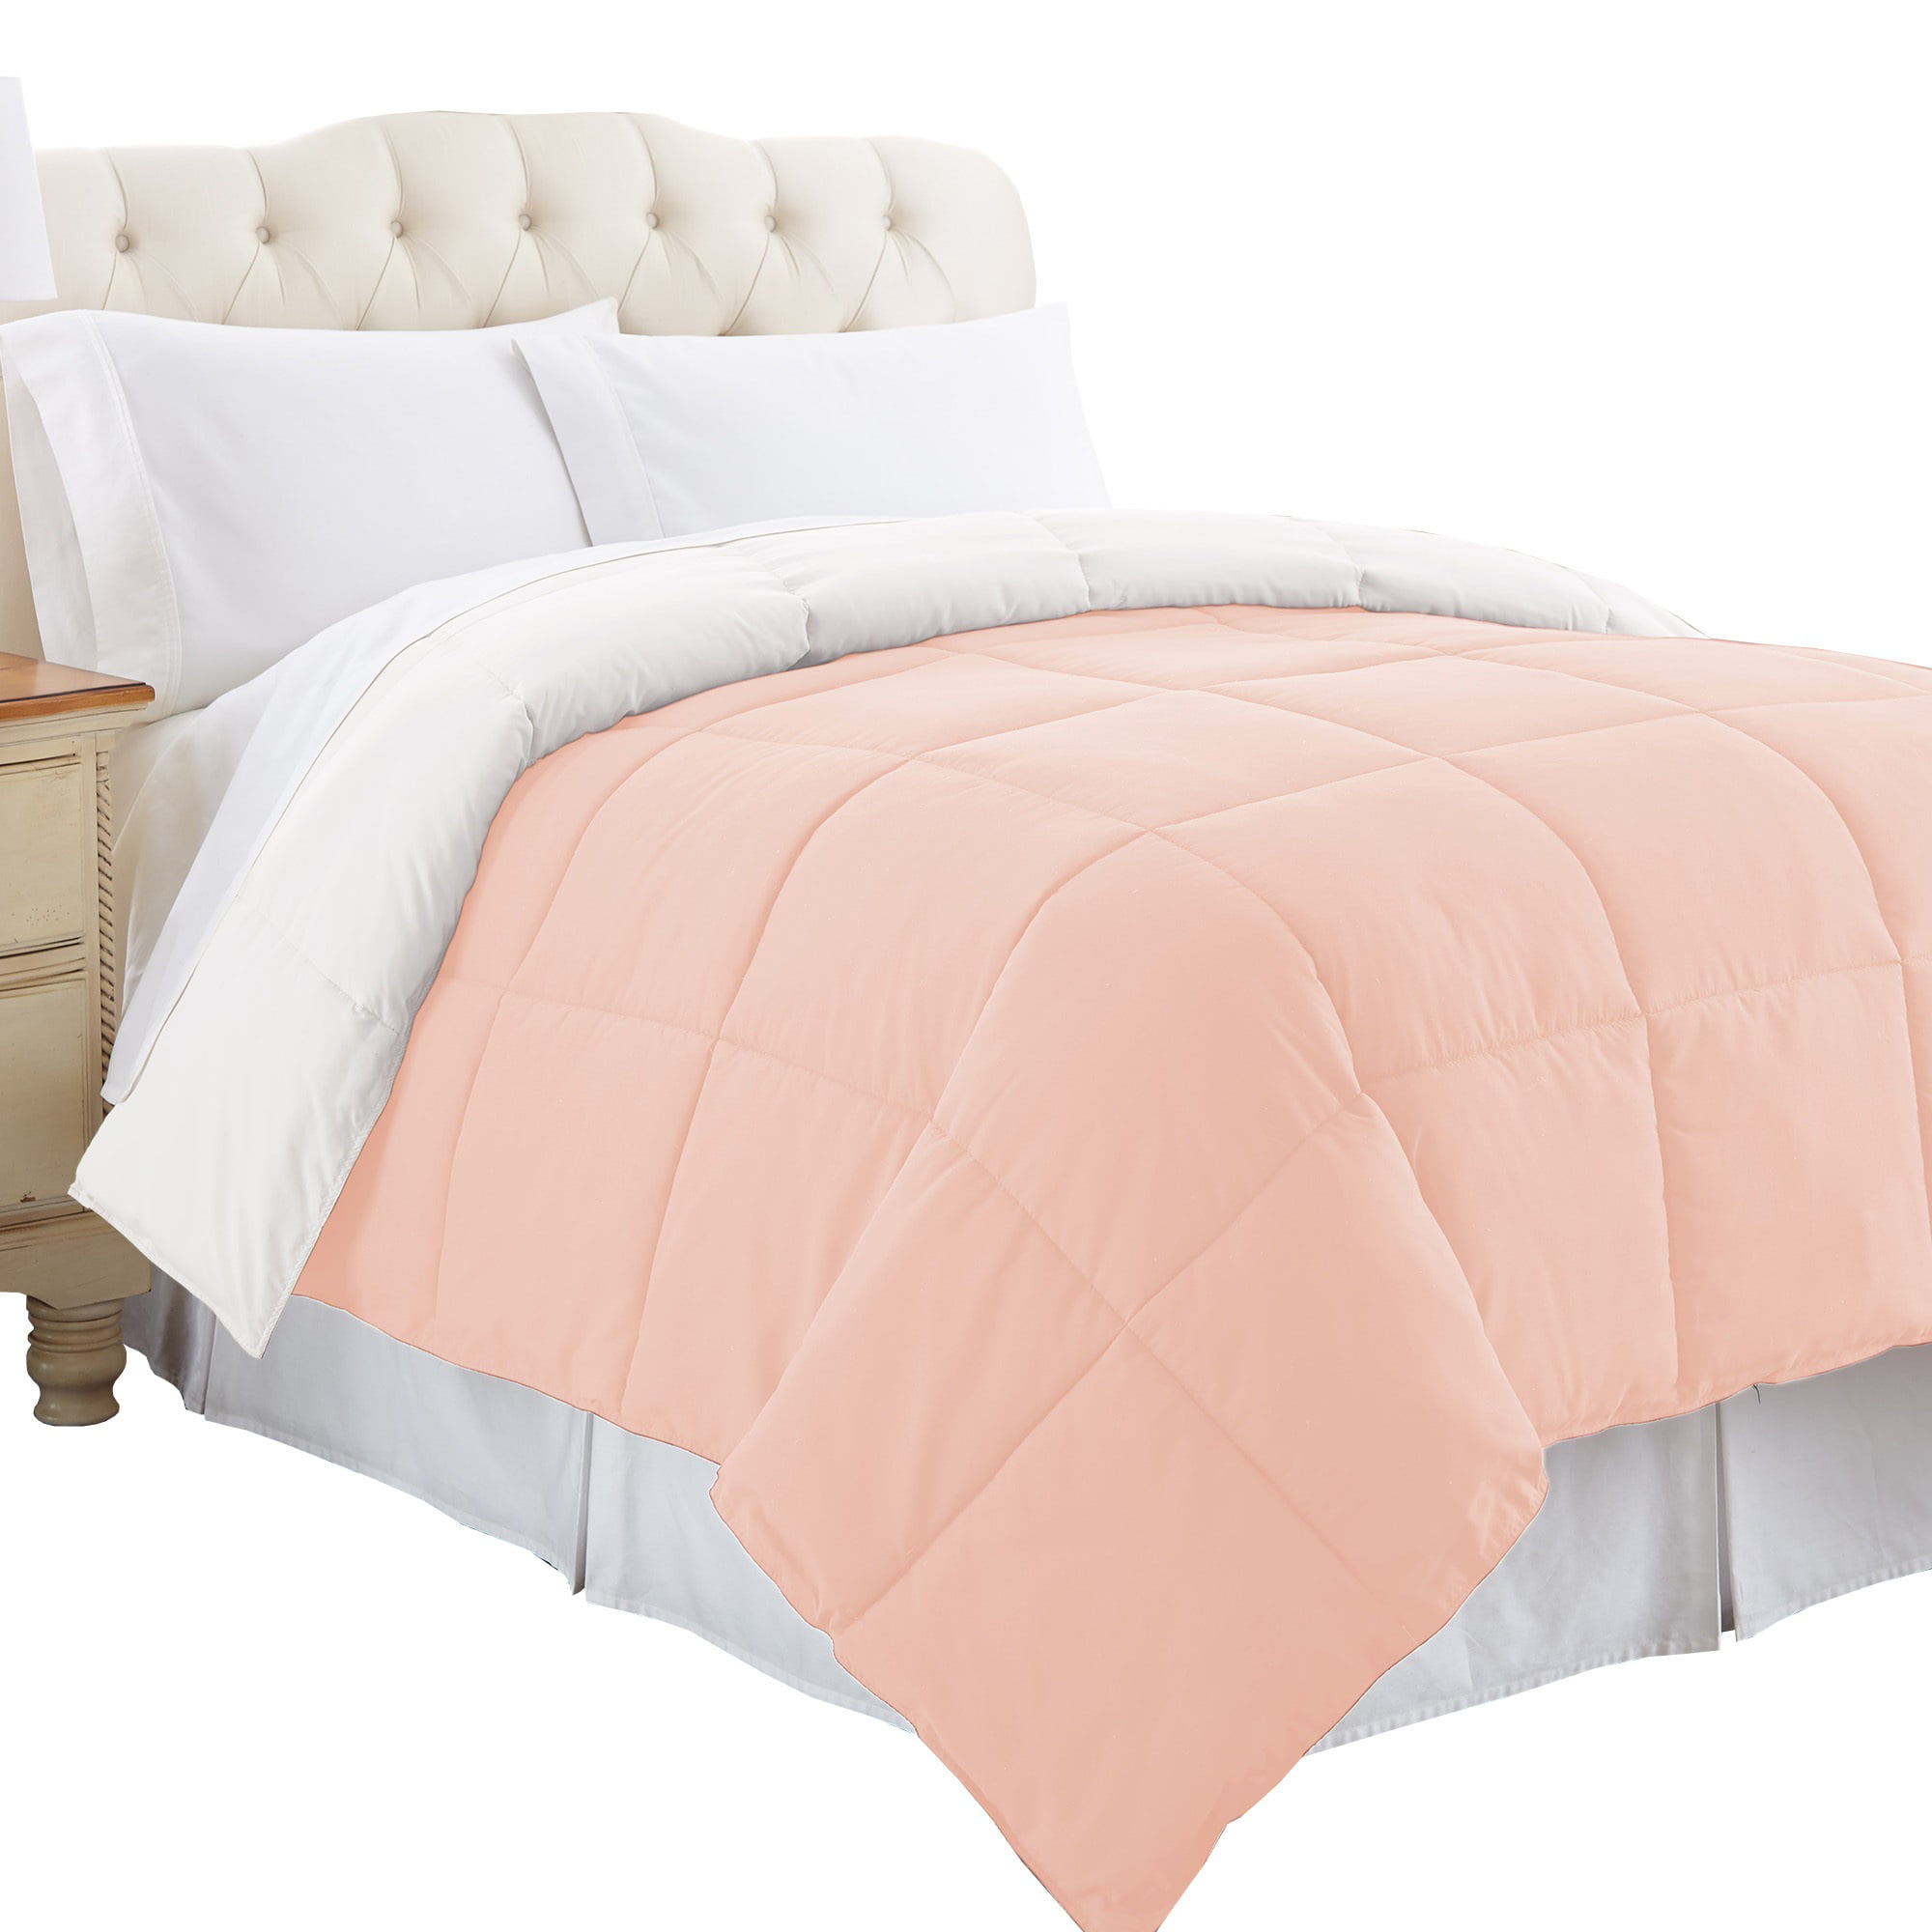 Elegant Comfort Down Alternative Comforters, King (3 Counts 